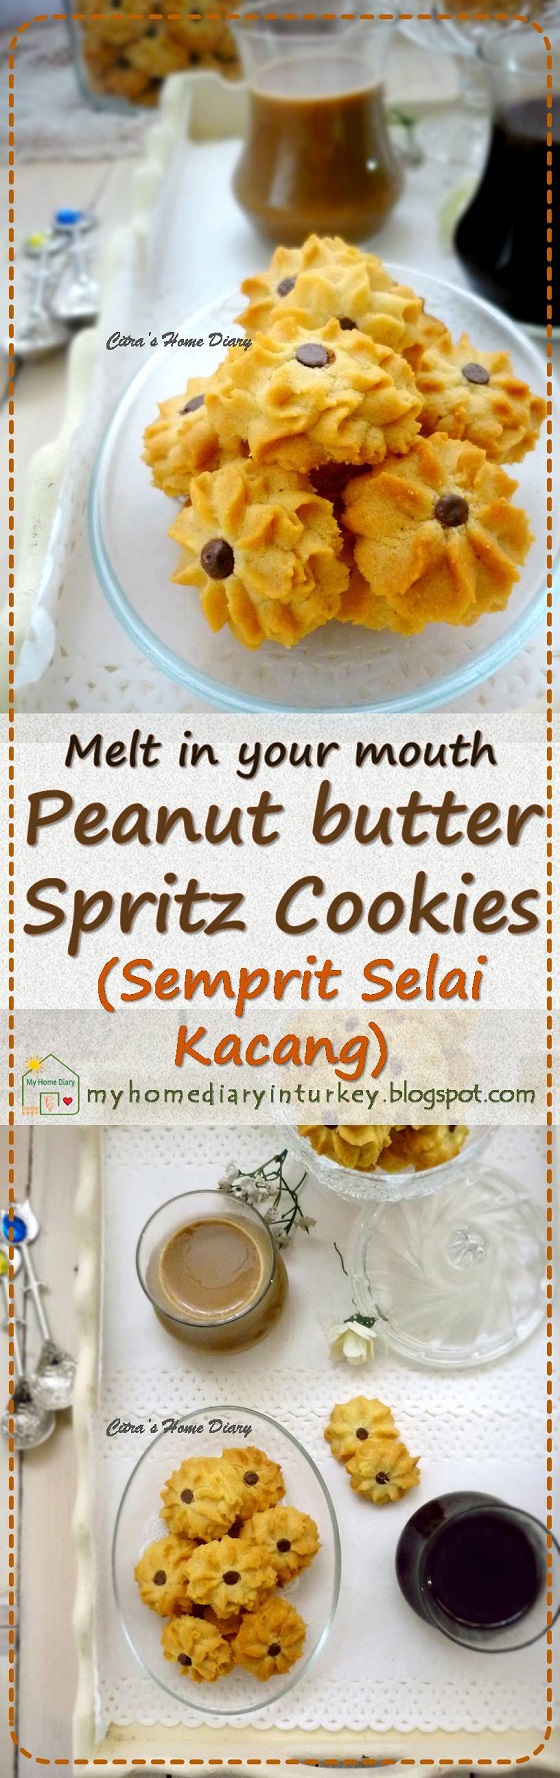 Melt in your mouth Peanut butter spritz cookies / Semprit selai kacang yang nagih enaknya